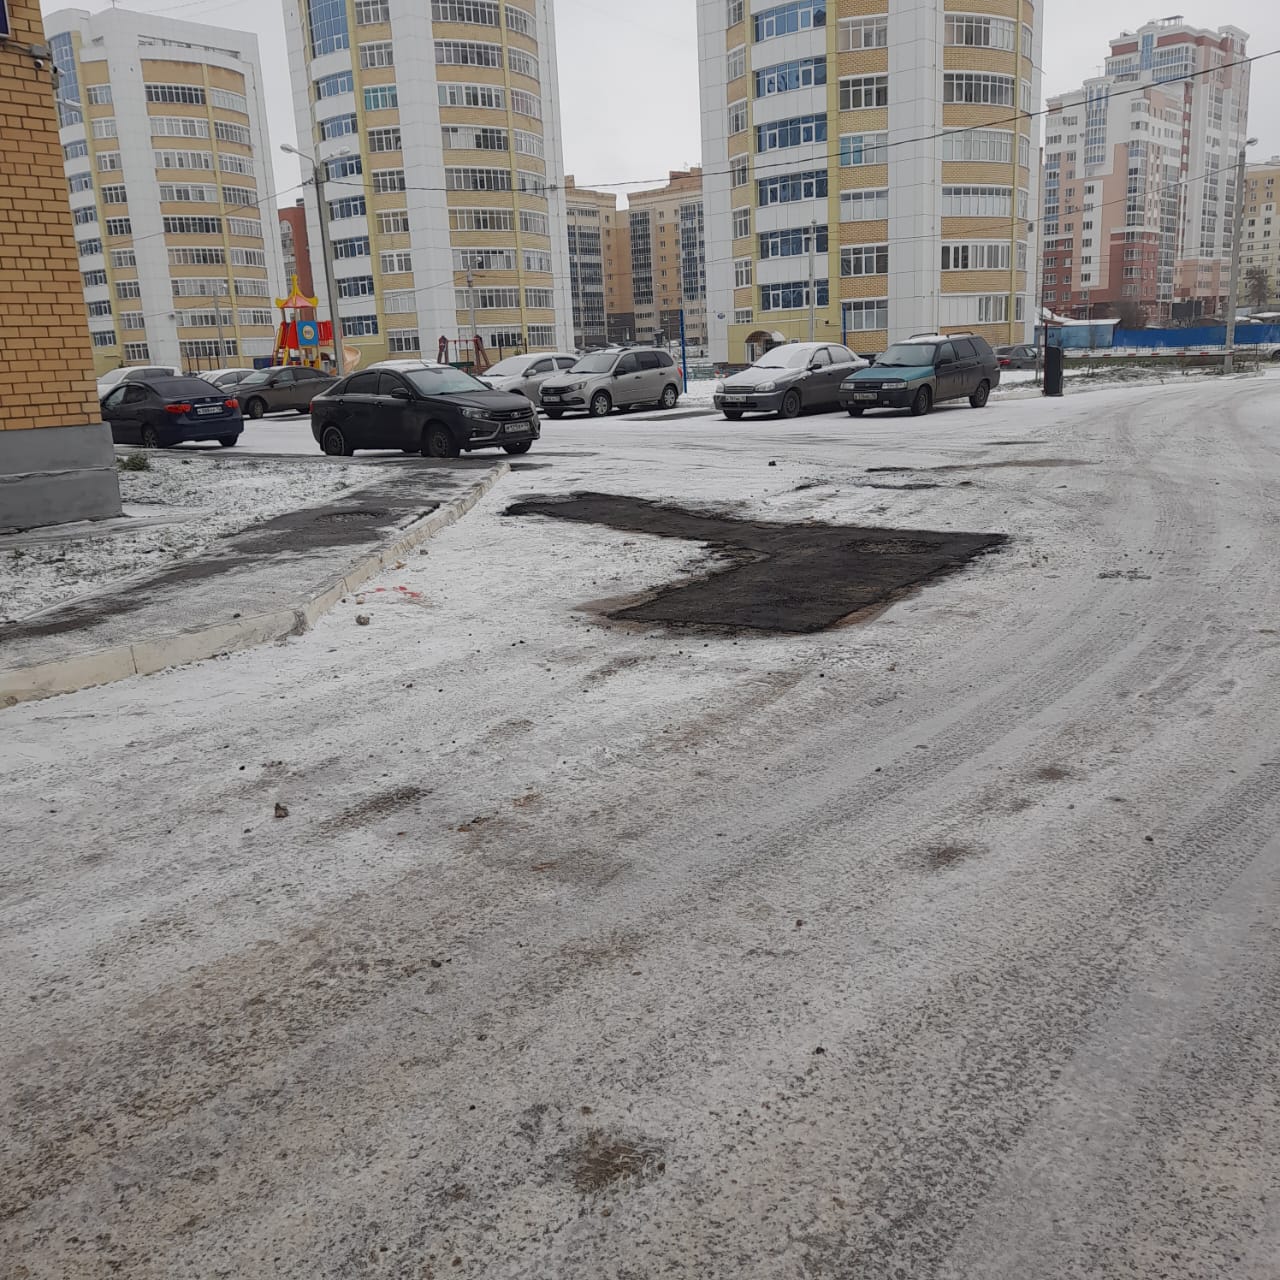 Административно-техническая инспекция Администрации городского округа Саранск ведет работу по приемке территорий после земляных работ